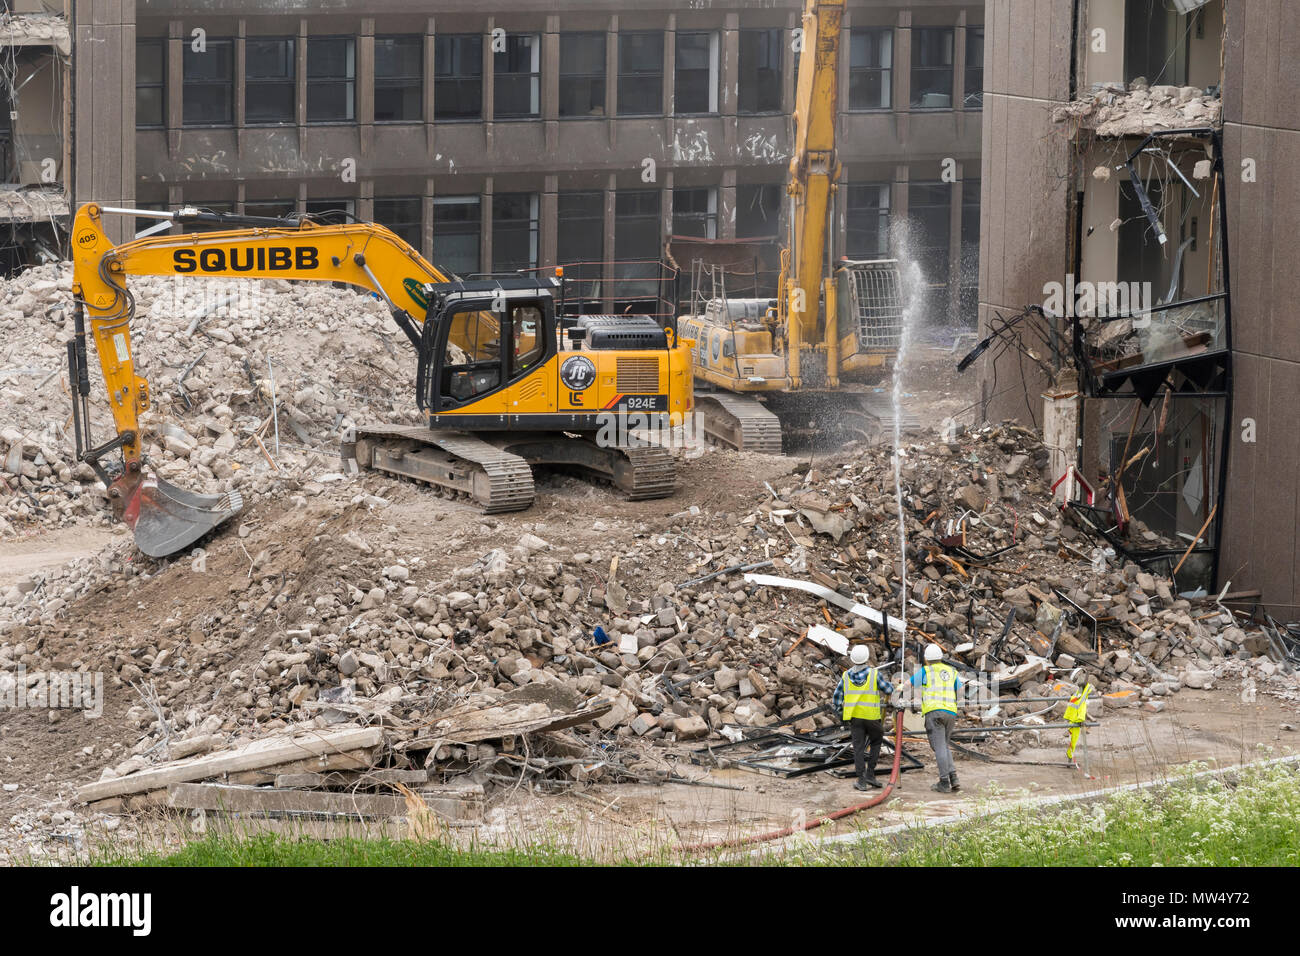 Alta Vista del sito di demolizione di macerie, macchinari pesanti (escavatori) & lavoro demolendo ufficio vuoto edificio - Hudson House York, Inghilterra, Regno Unito. Foto Stock